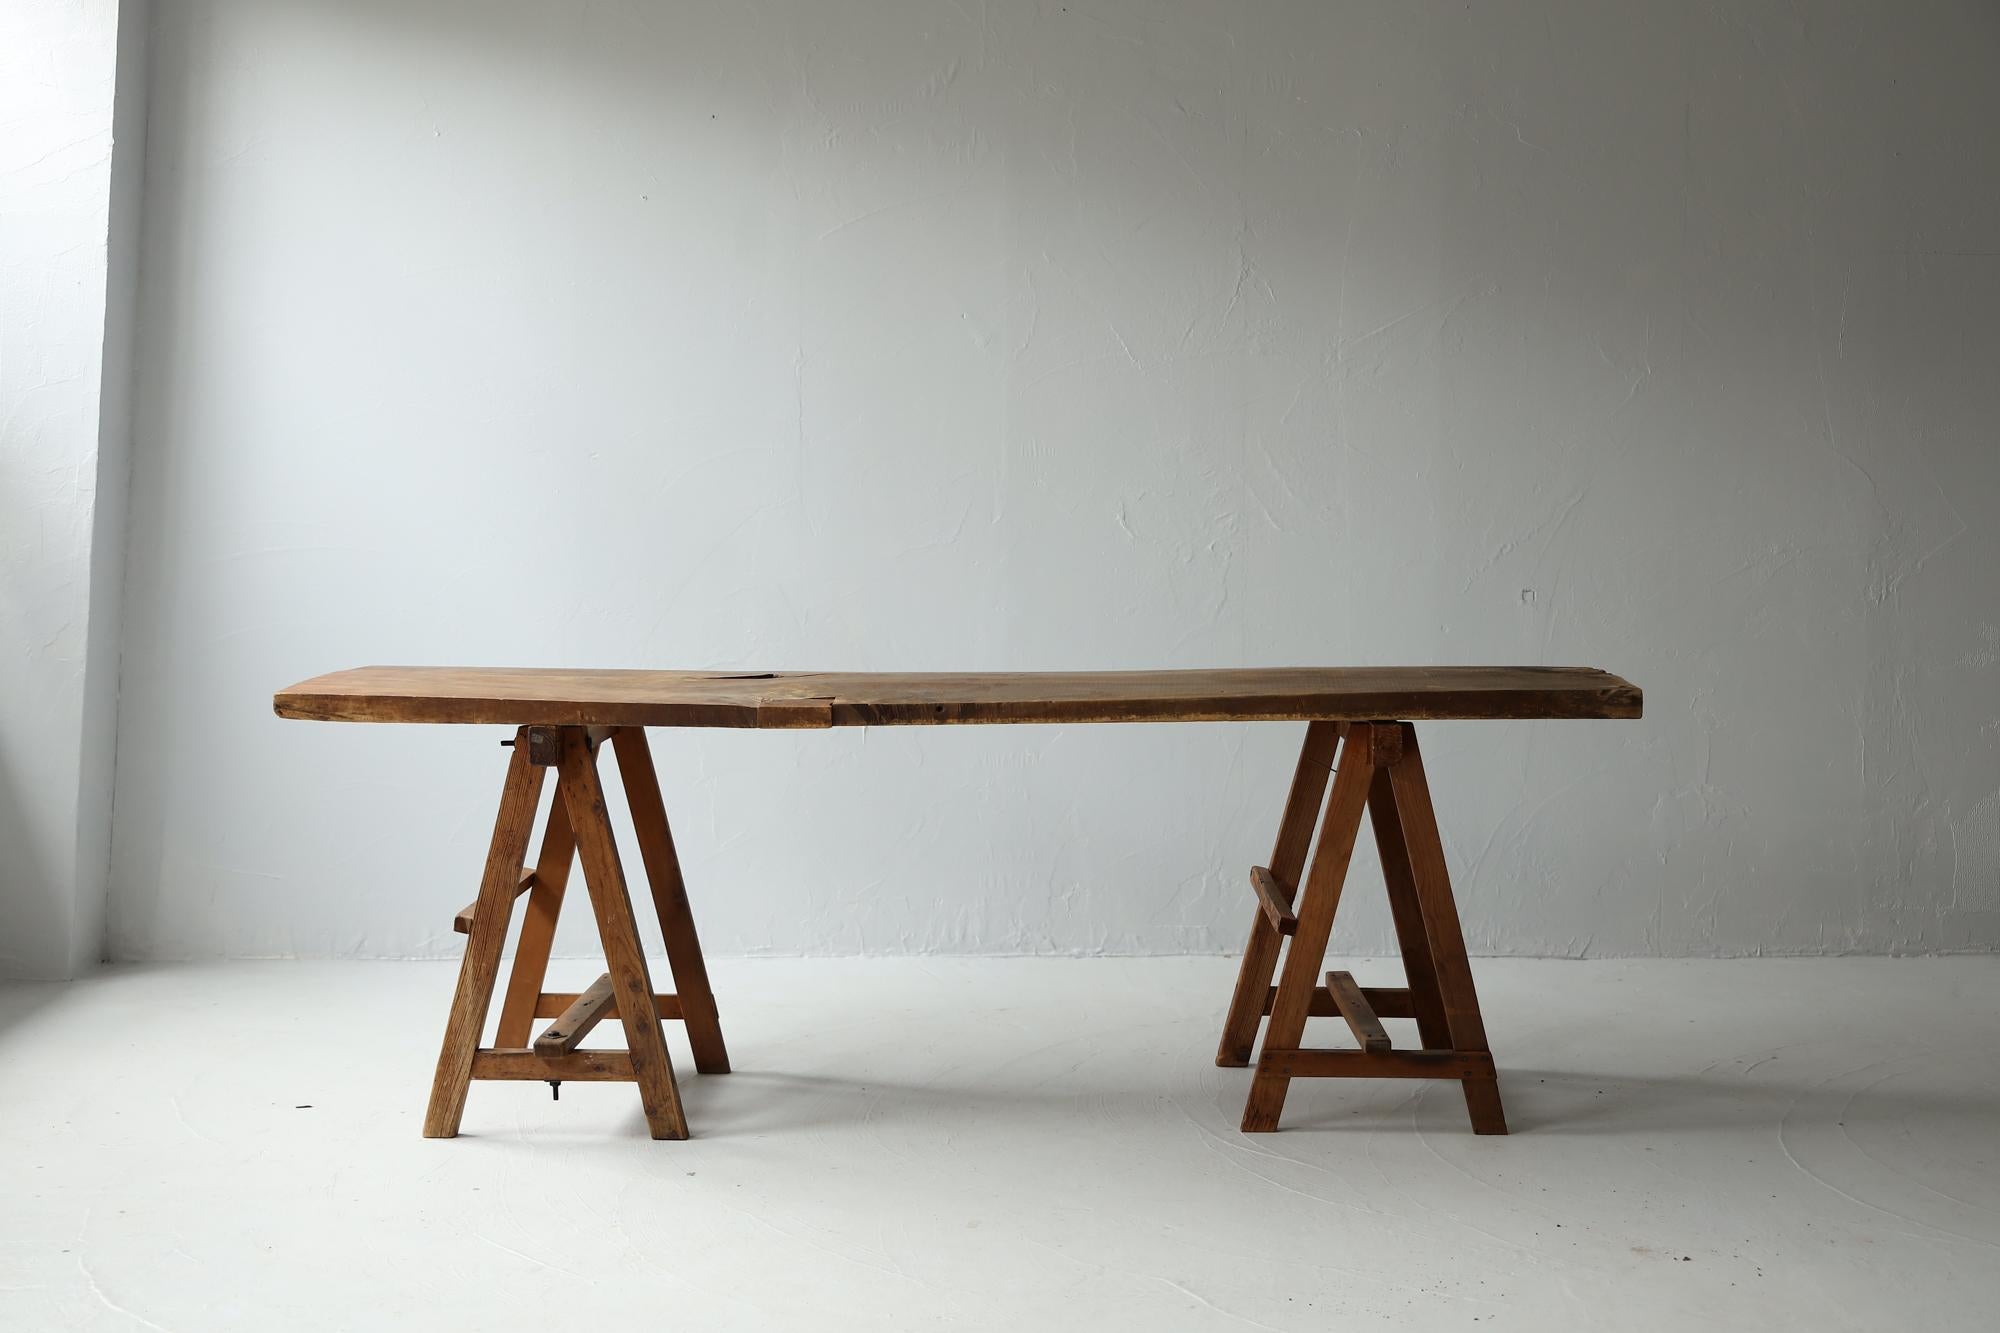 Sehr alter japanischer Tisch im primitiven Stil.
Einfaches Design mit einer einzigen Tafel auf zwei Sockeln.

Die Dielen sind aus japanischer Rosskastanie gefertigt.
Der Sockel ist aus Zedernholz.
Das MATERIAL selbst ist sehr einzigartig und äußerst